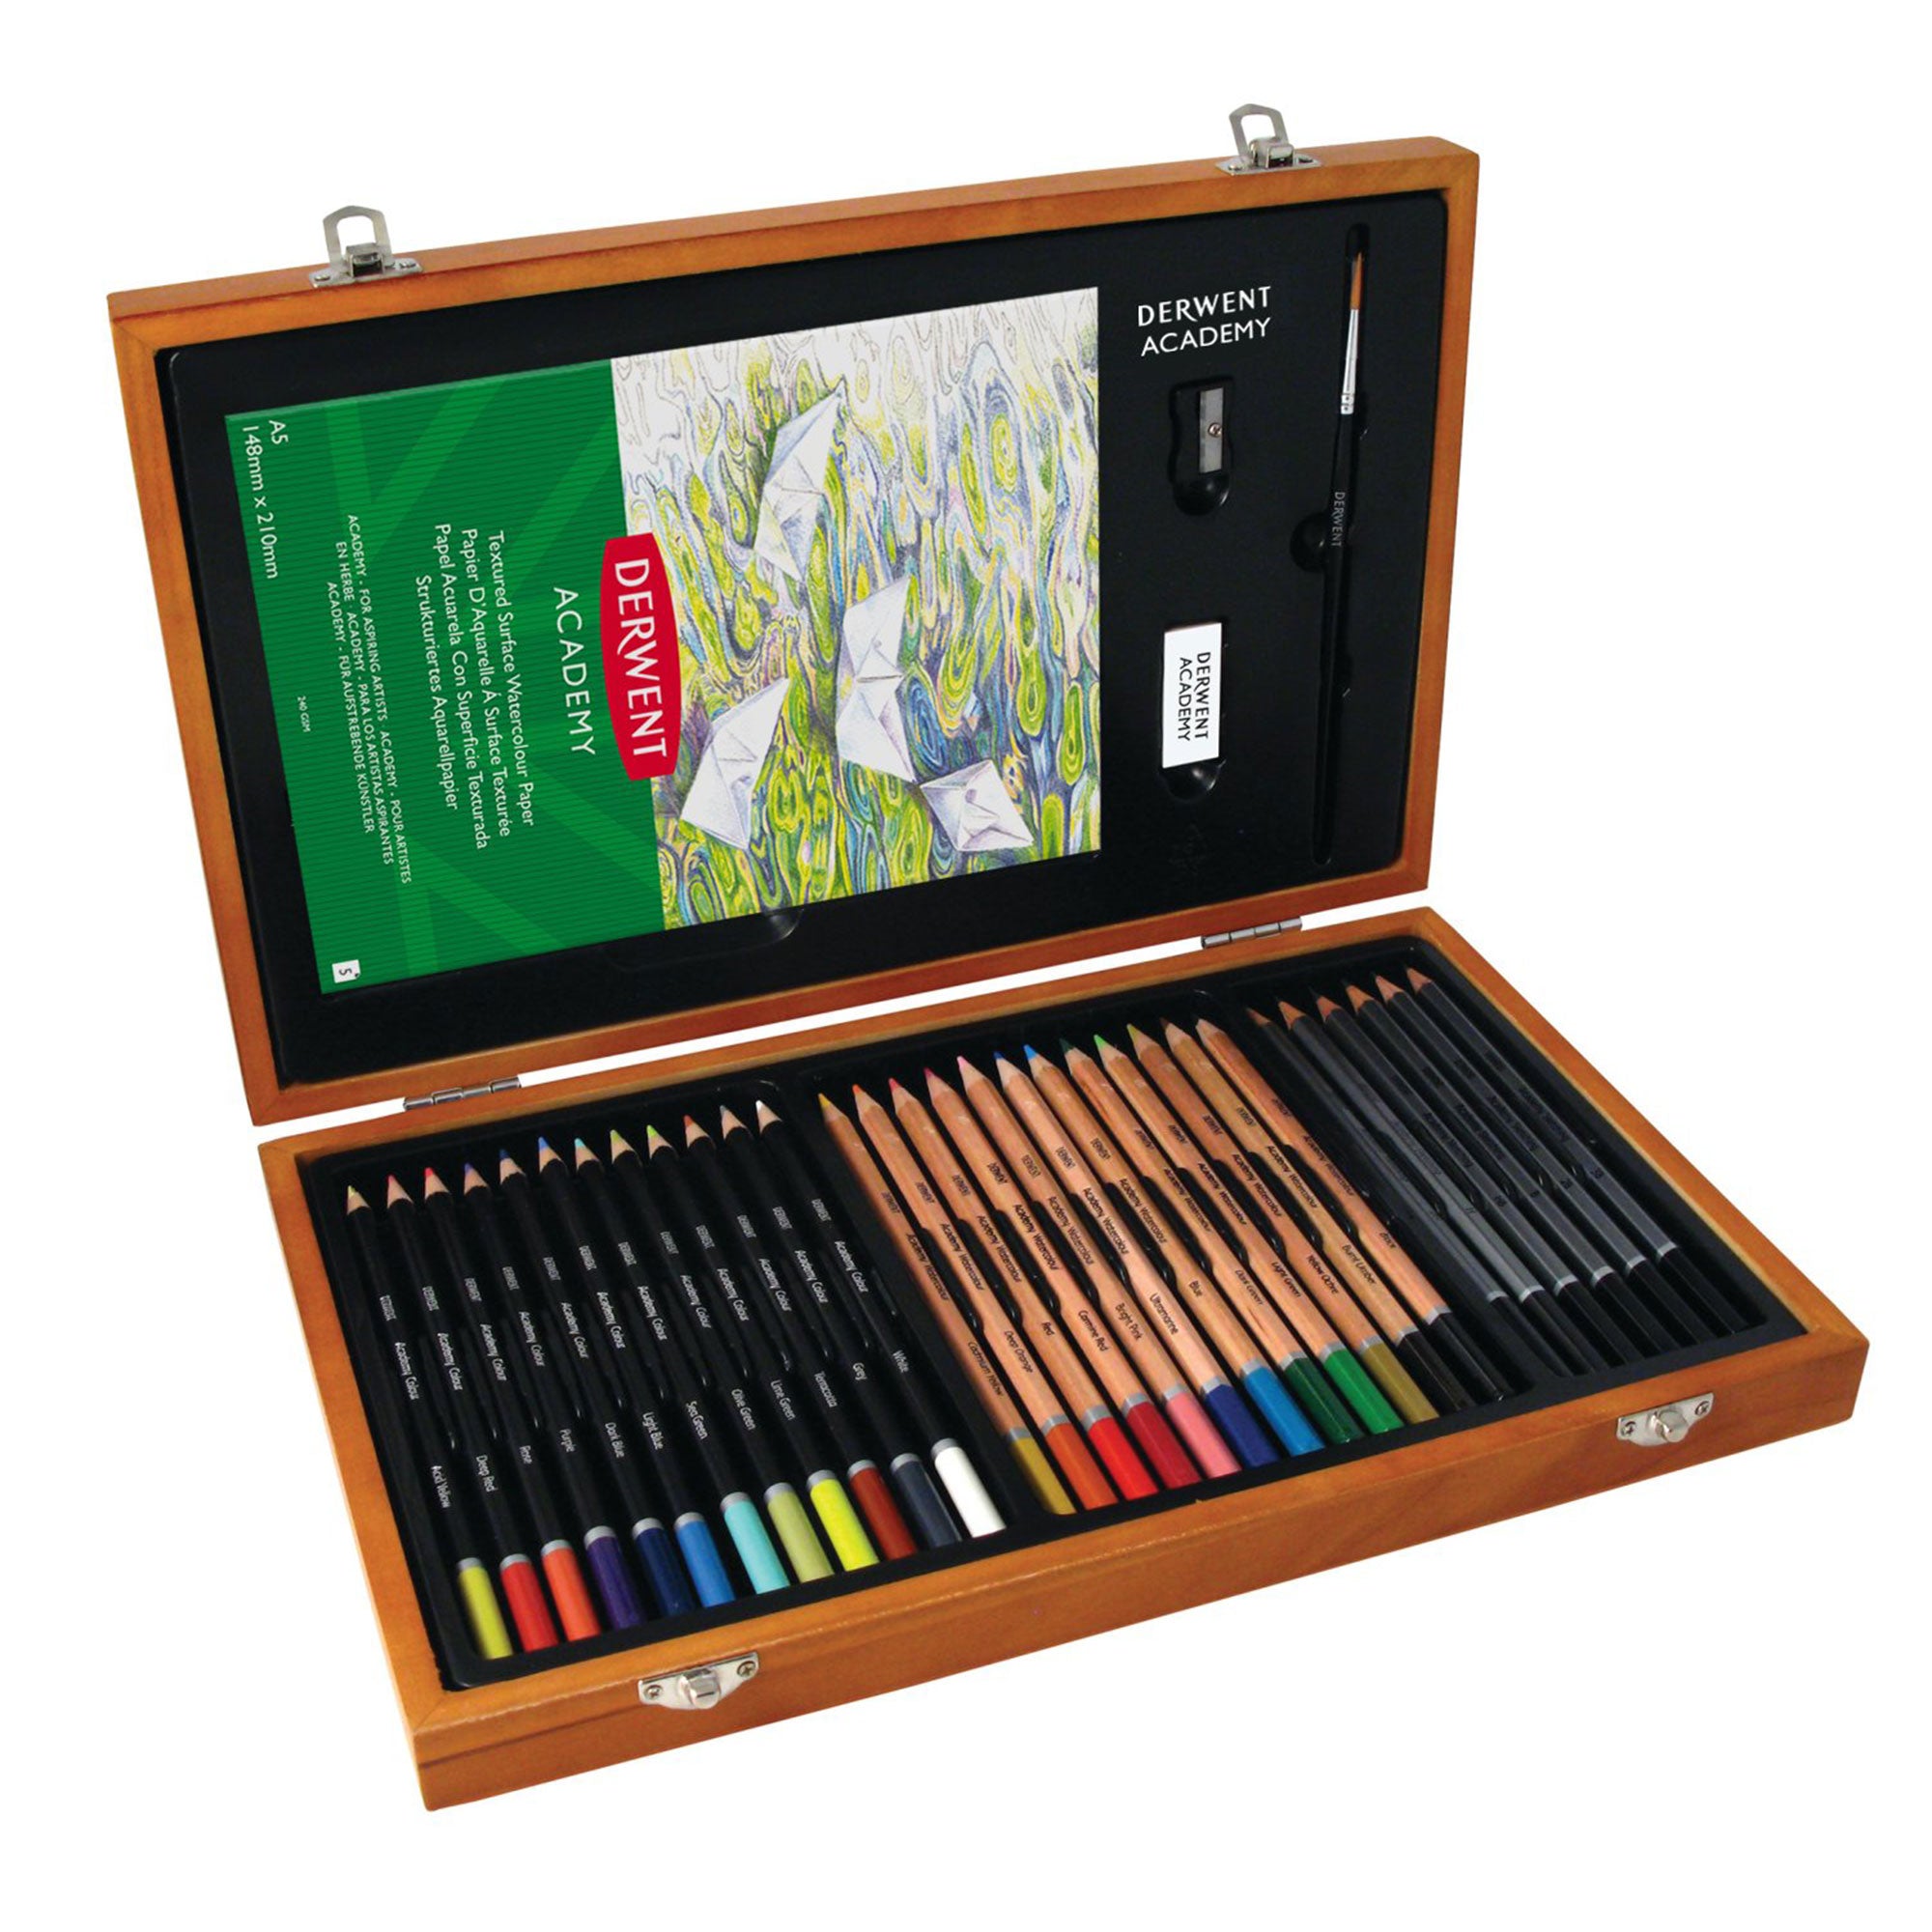 Derwent Academy Wooden Box Set of Coloured Pencils